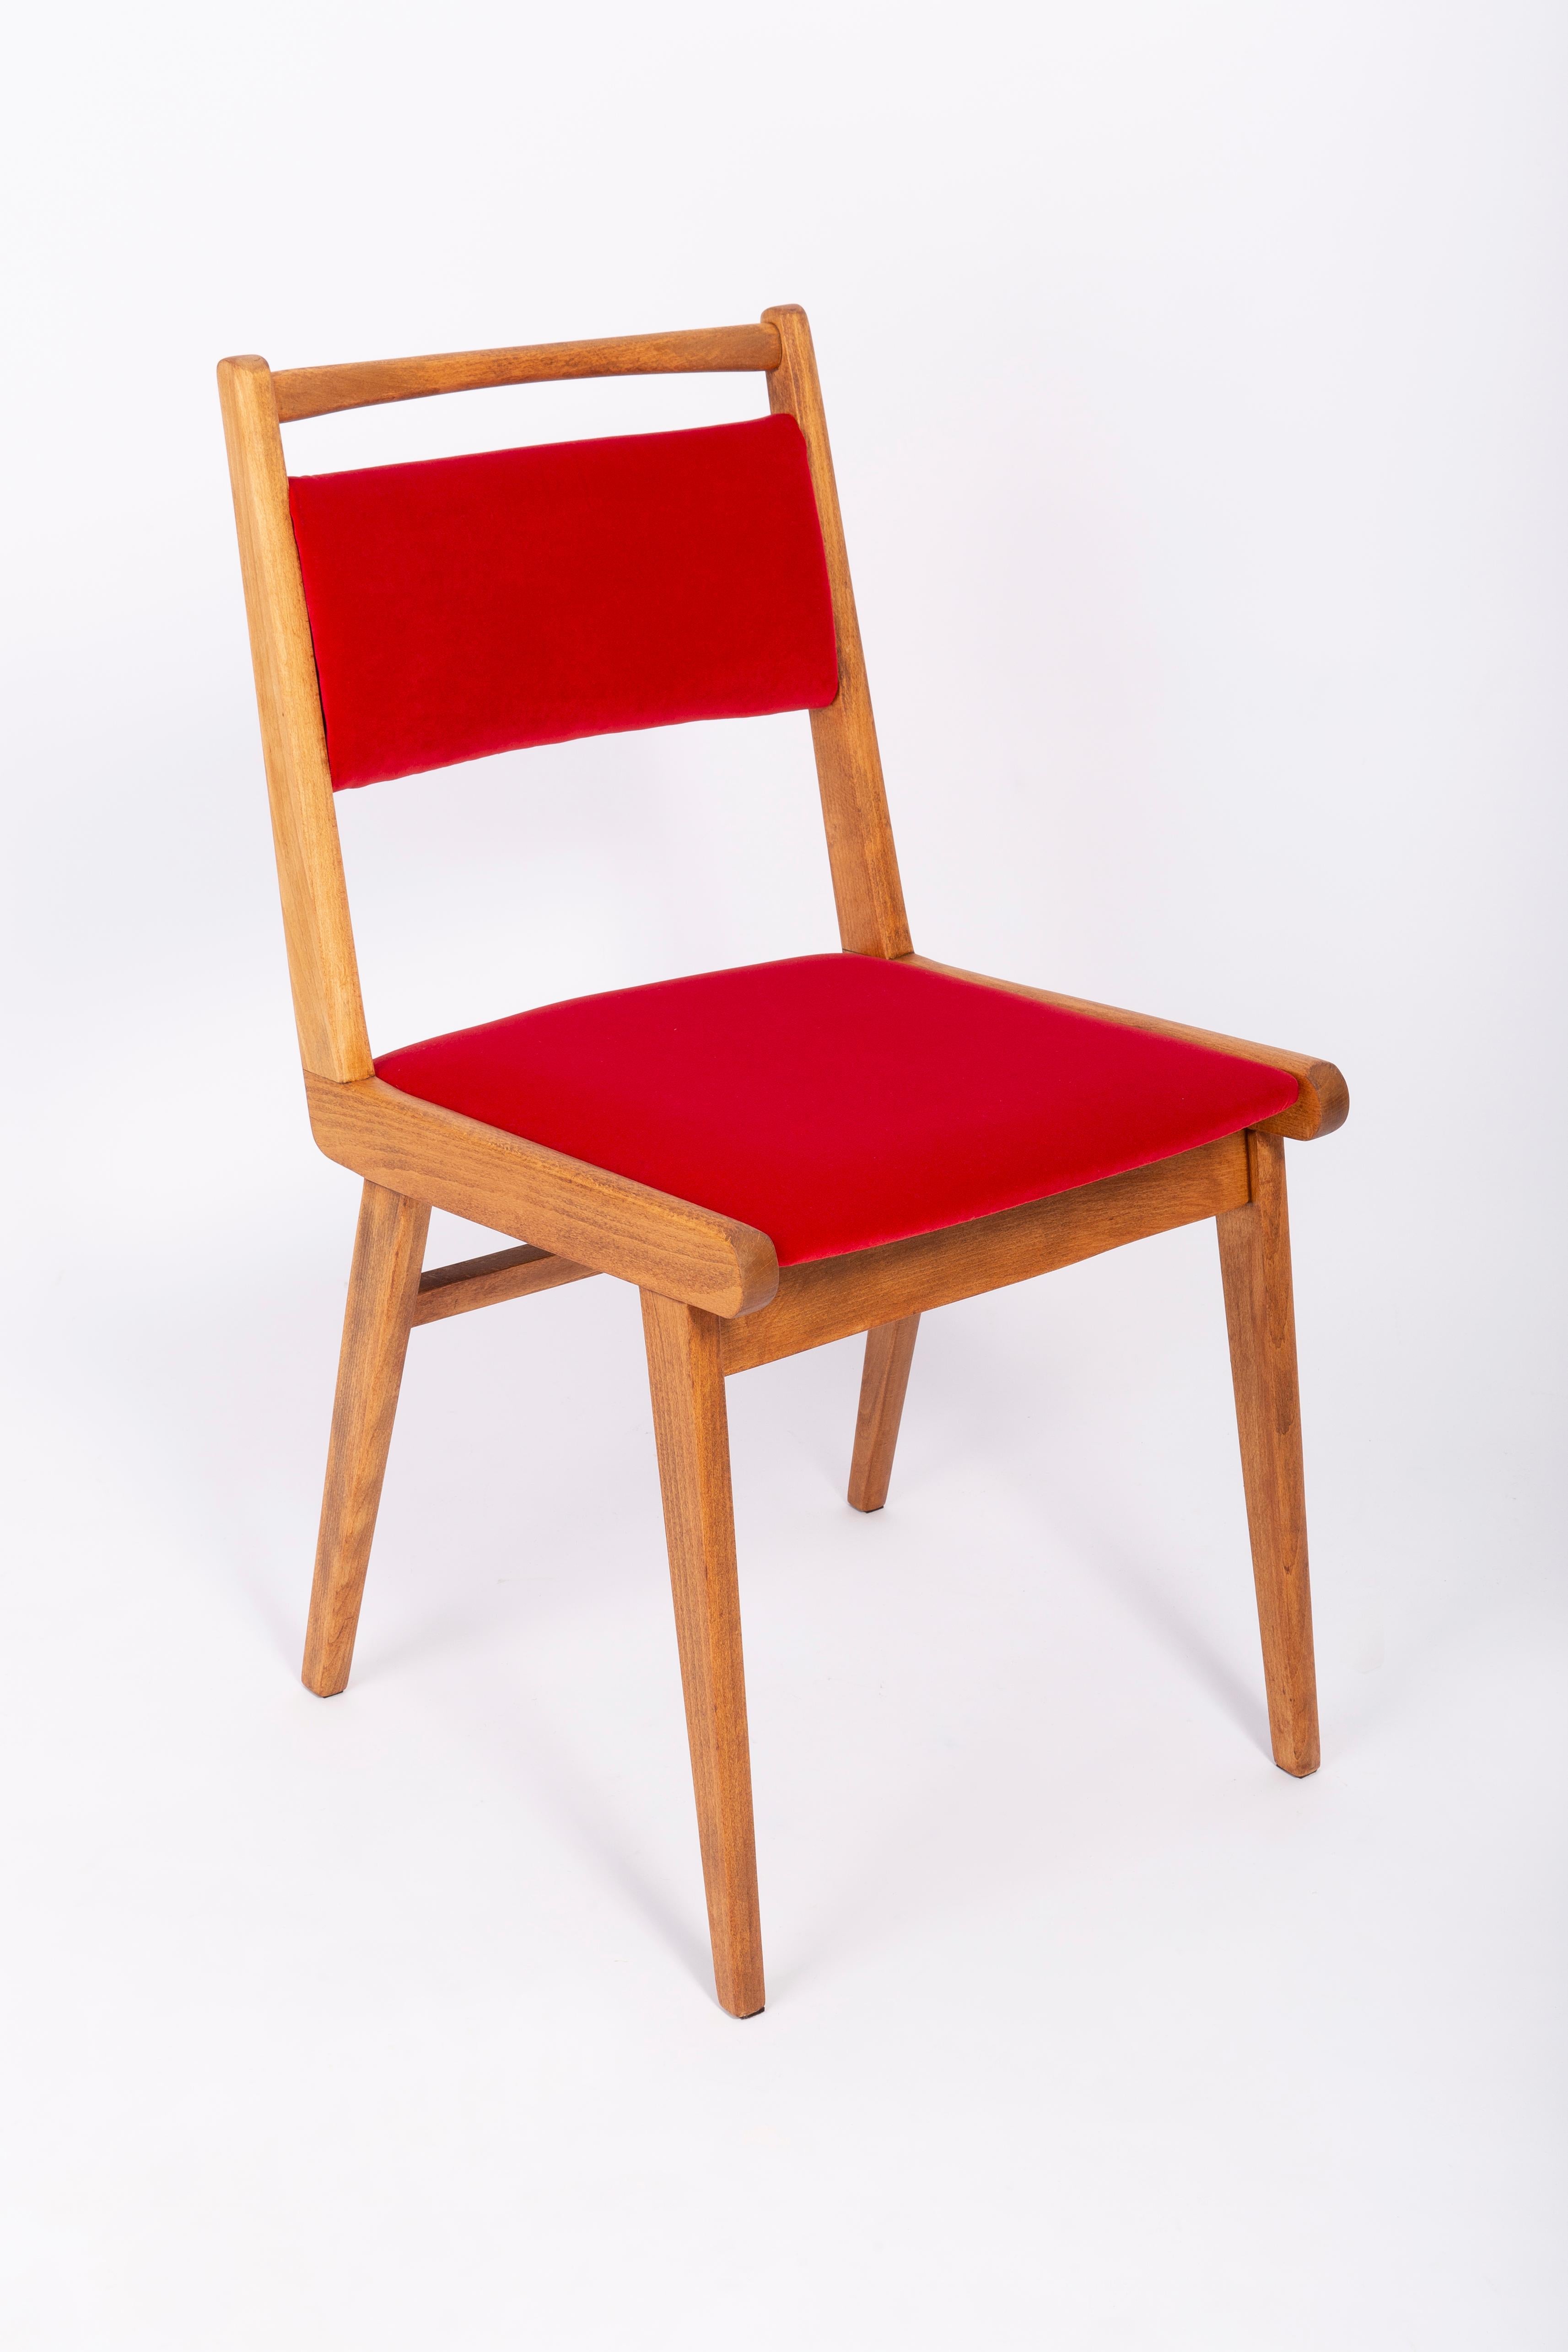 Stuhl entworfen von Prof. Rajmund Halas. Es handelt sich um ein Modell vom Typ JAR. Hergestellt aus Buchenholz. Der Stuhl wurde komplett neu gepolstert, die Holzarbeiten wurden aufgefrischt. Sitz und Rückenlehne sind mit rotem, strapazierfähigem und